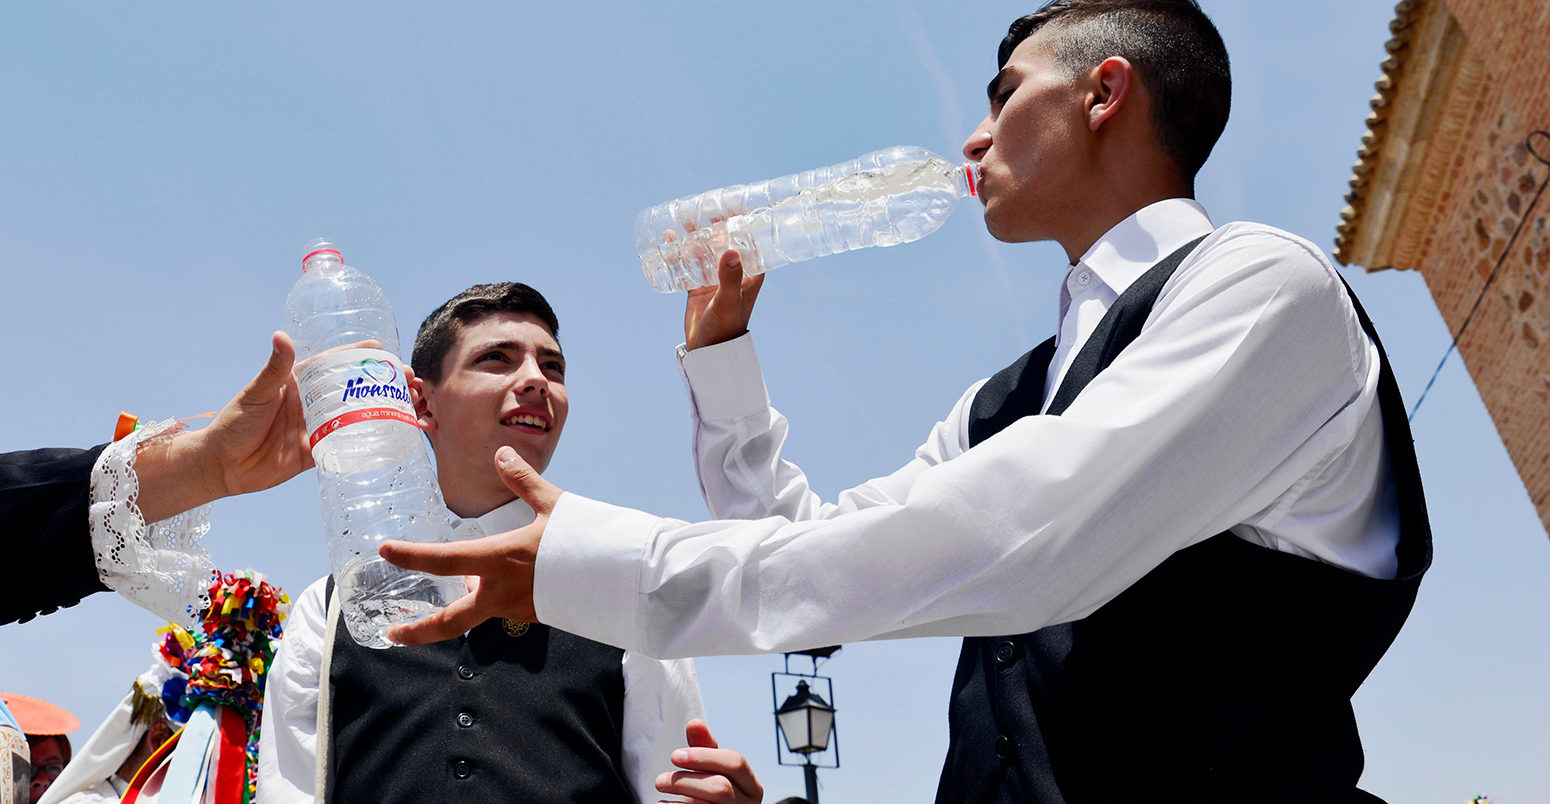 JCF7X8 Camunas,托莱多,西班牙。6月15日,2017年。年轻人在科珀斯克里斯蒂的队伍喝水。西班牙的一部分正在经历一场热浪气温高达42度之间。信贷:M。拉米雷斯除生活新闻